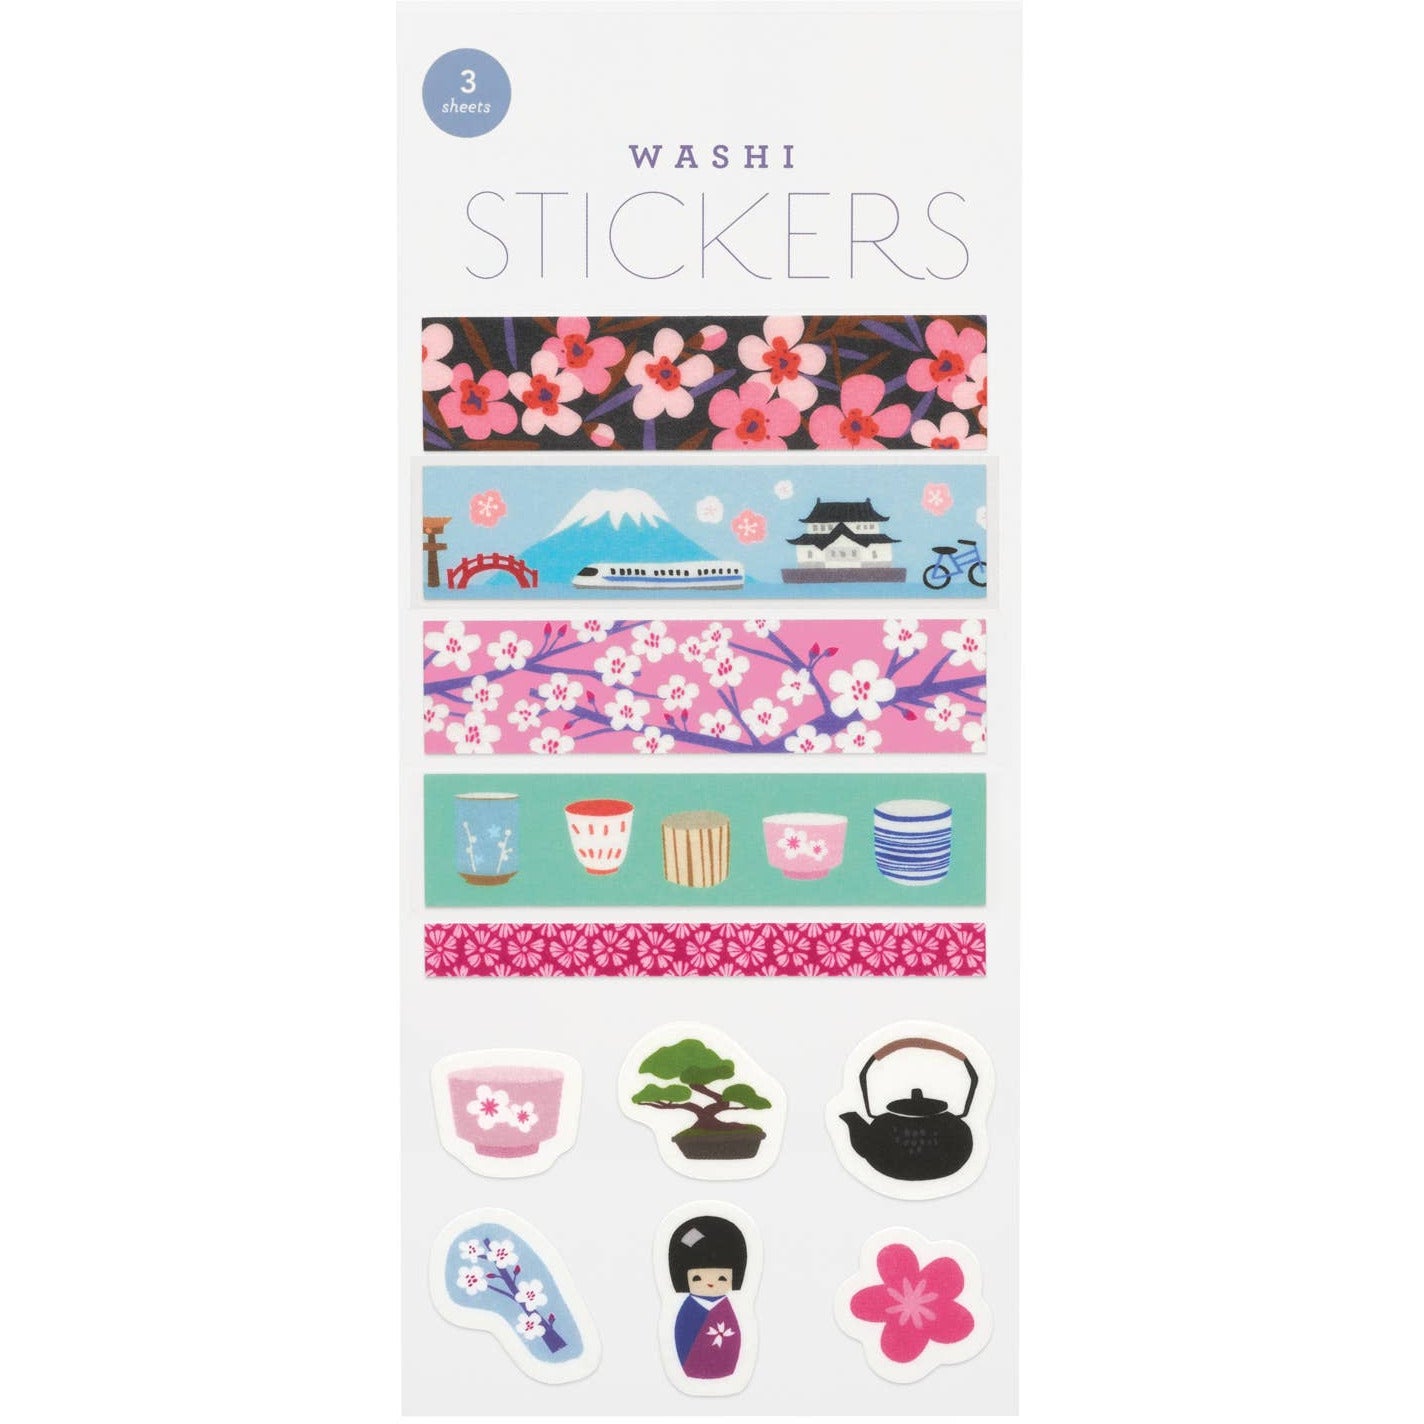 Tokyo Washi Stickers